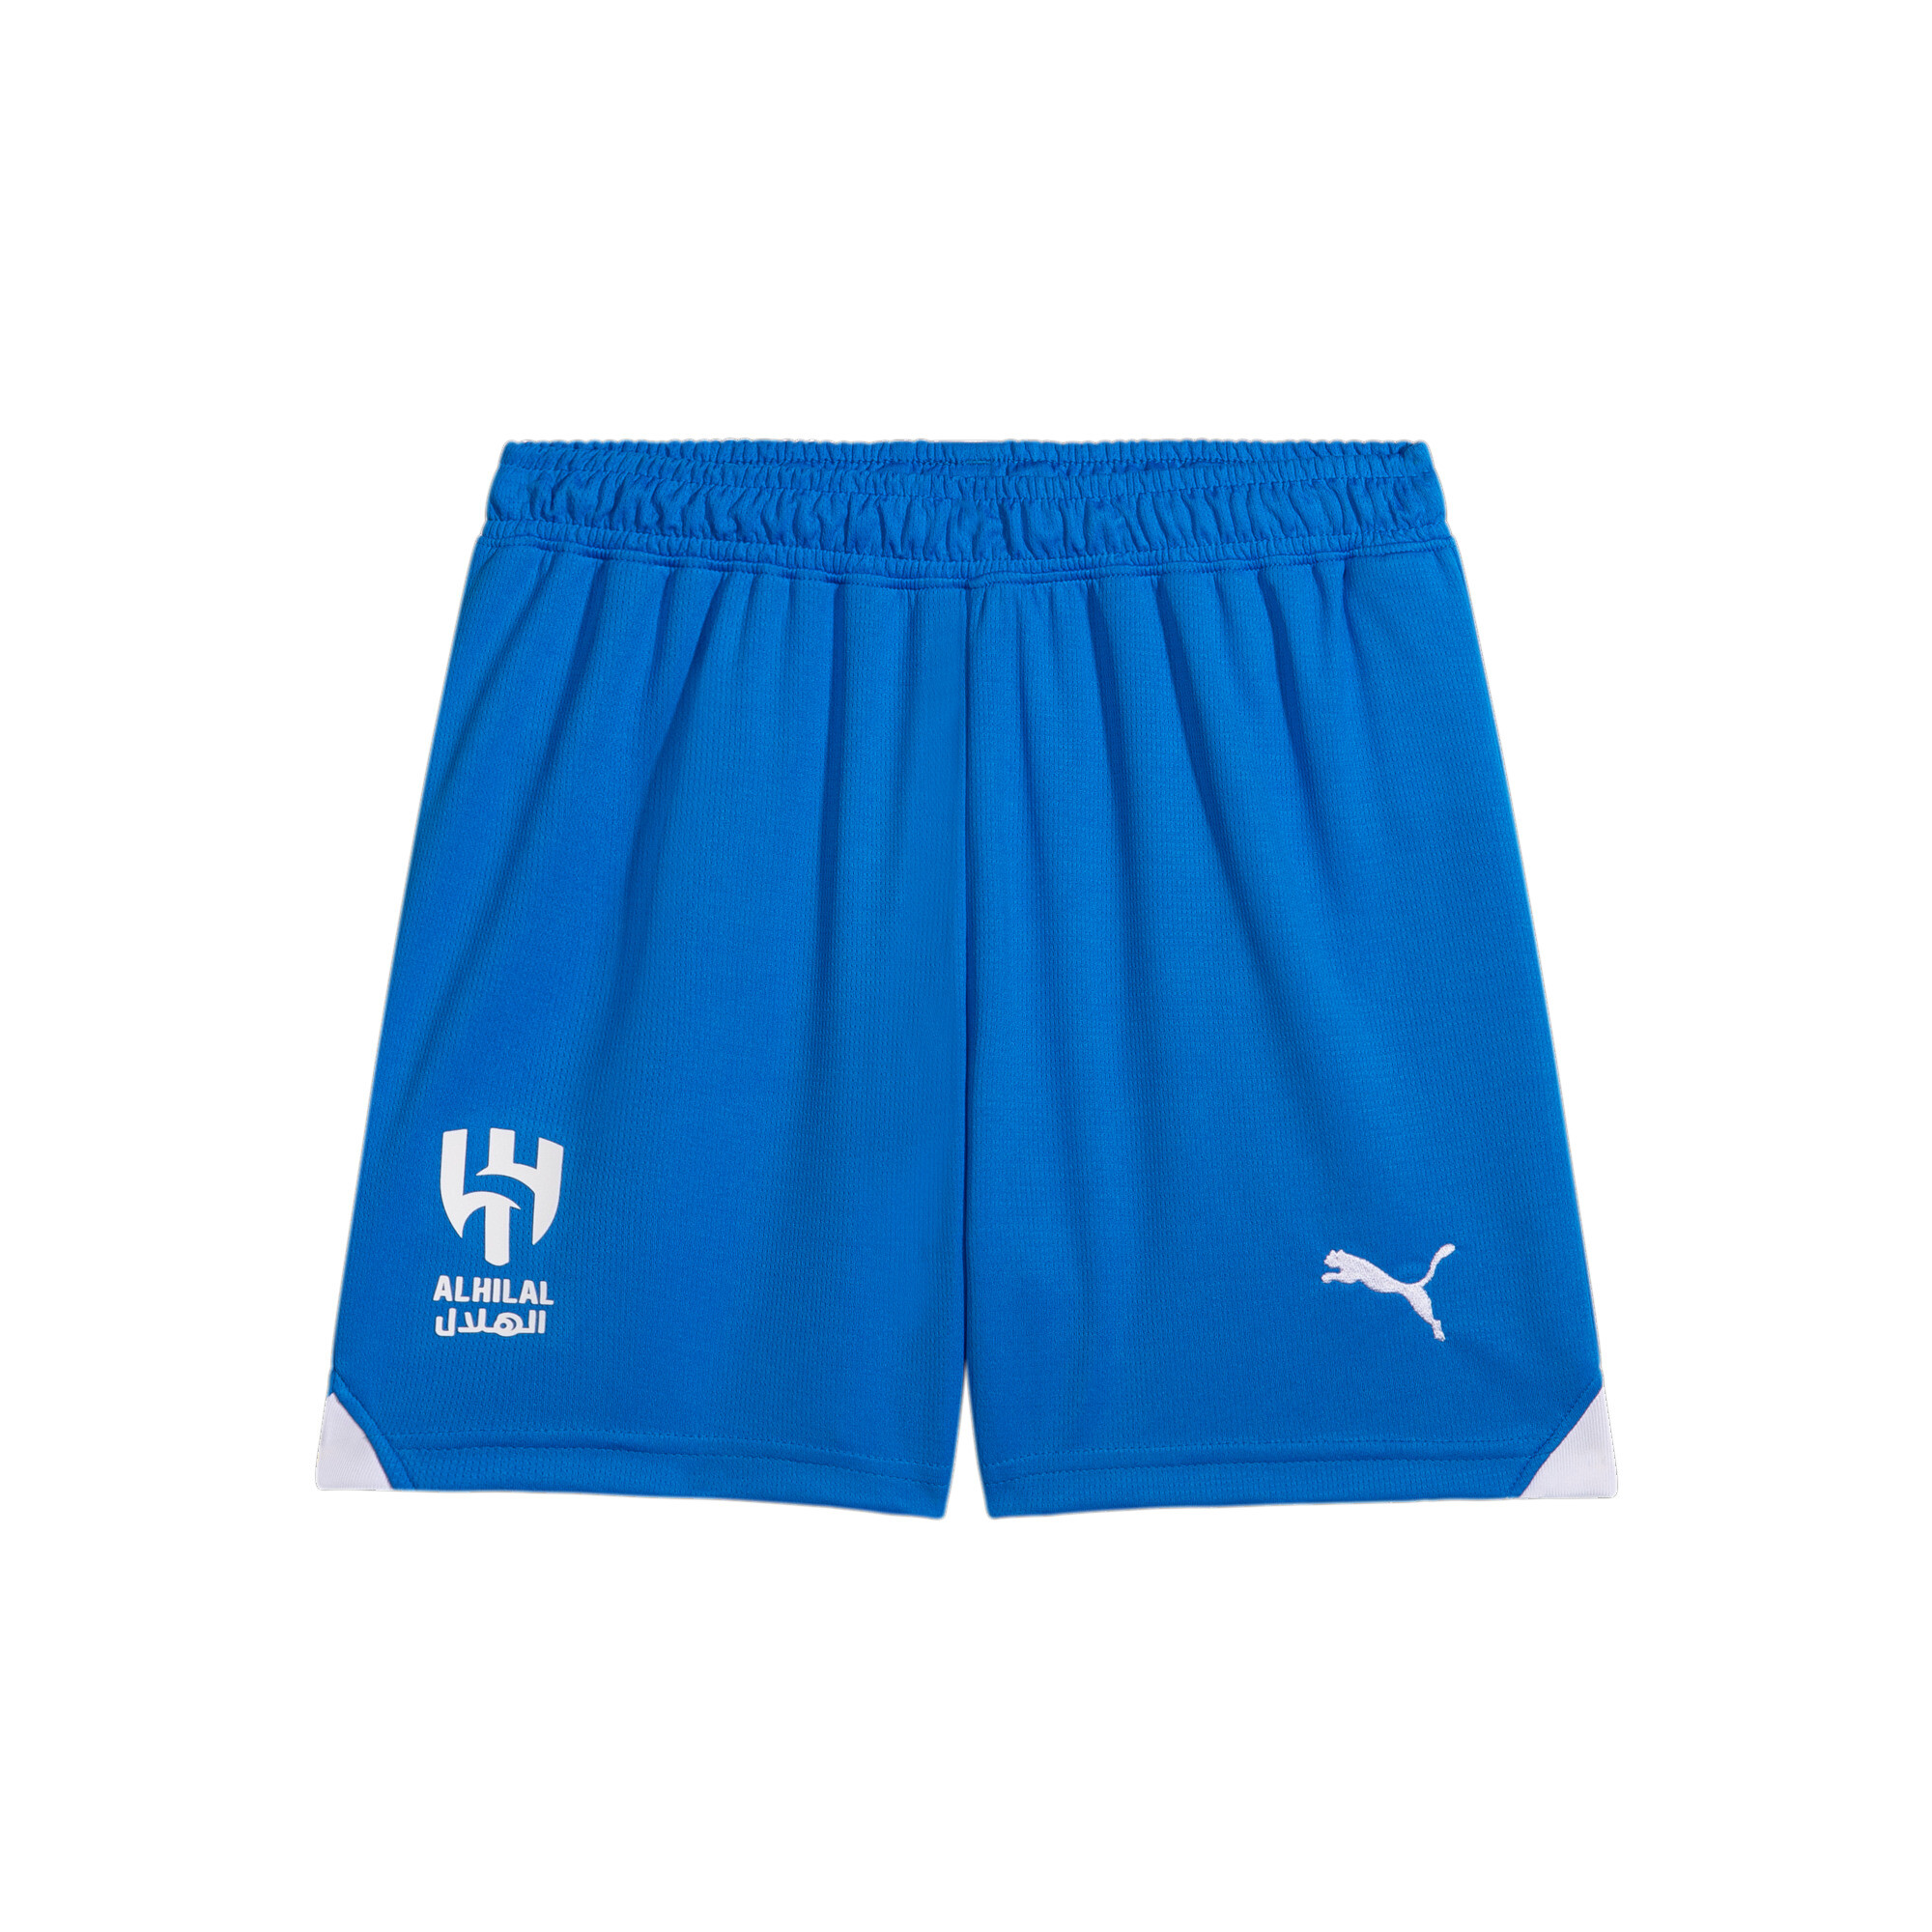 PUMA Al Hilal 23/24 Replica Shorts In Blue, Size 11-12 Youth